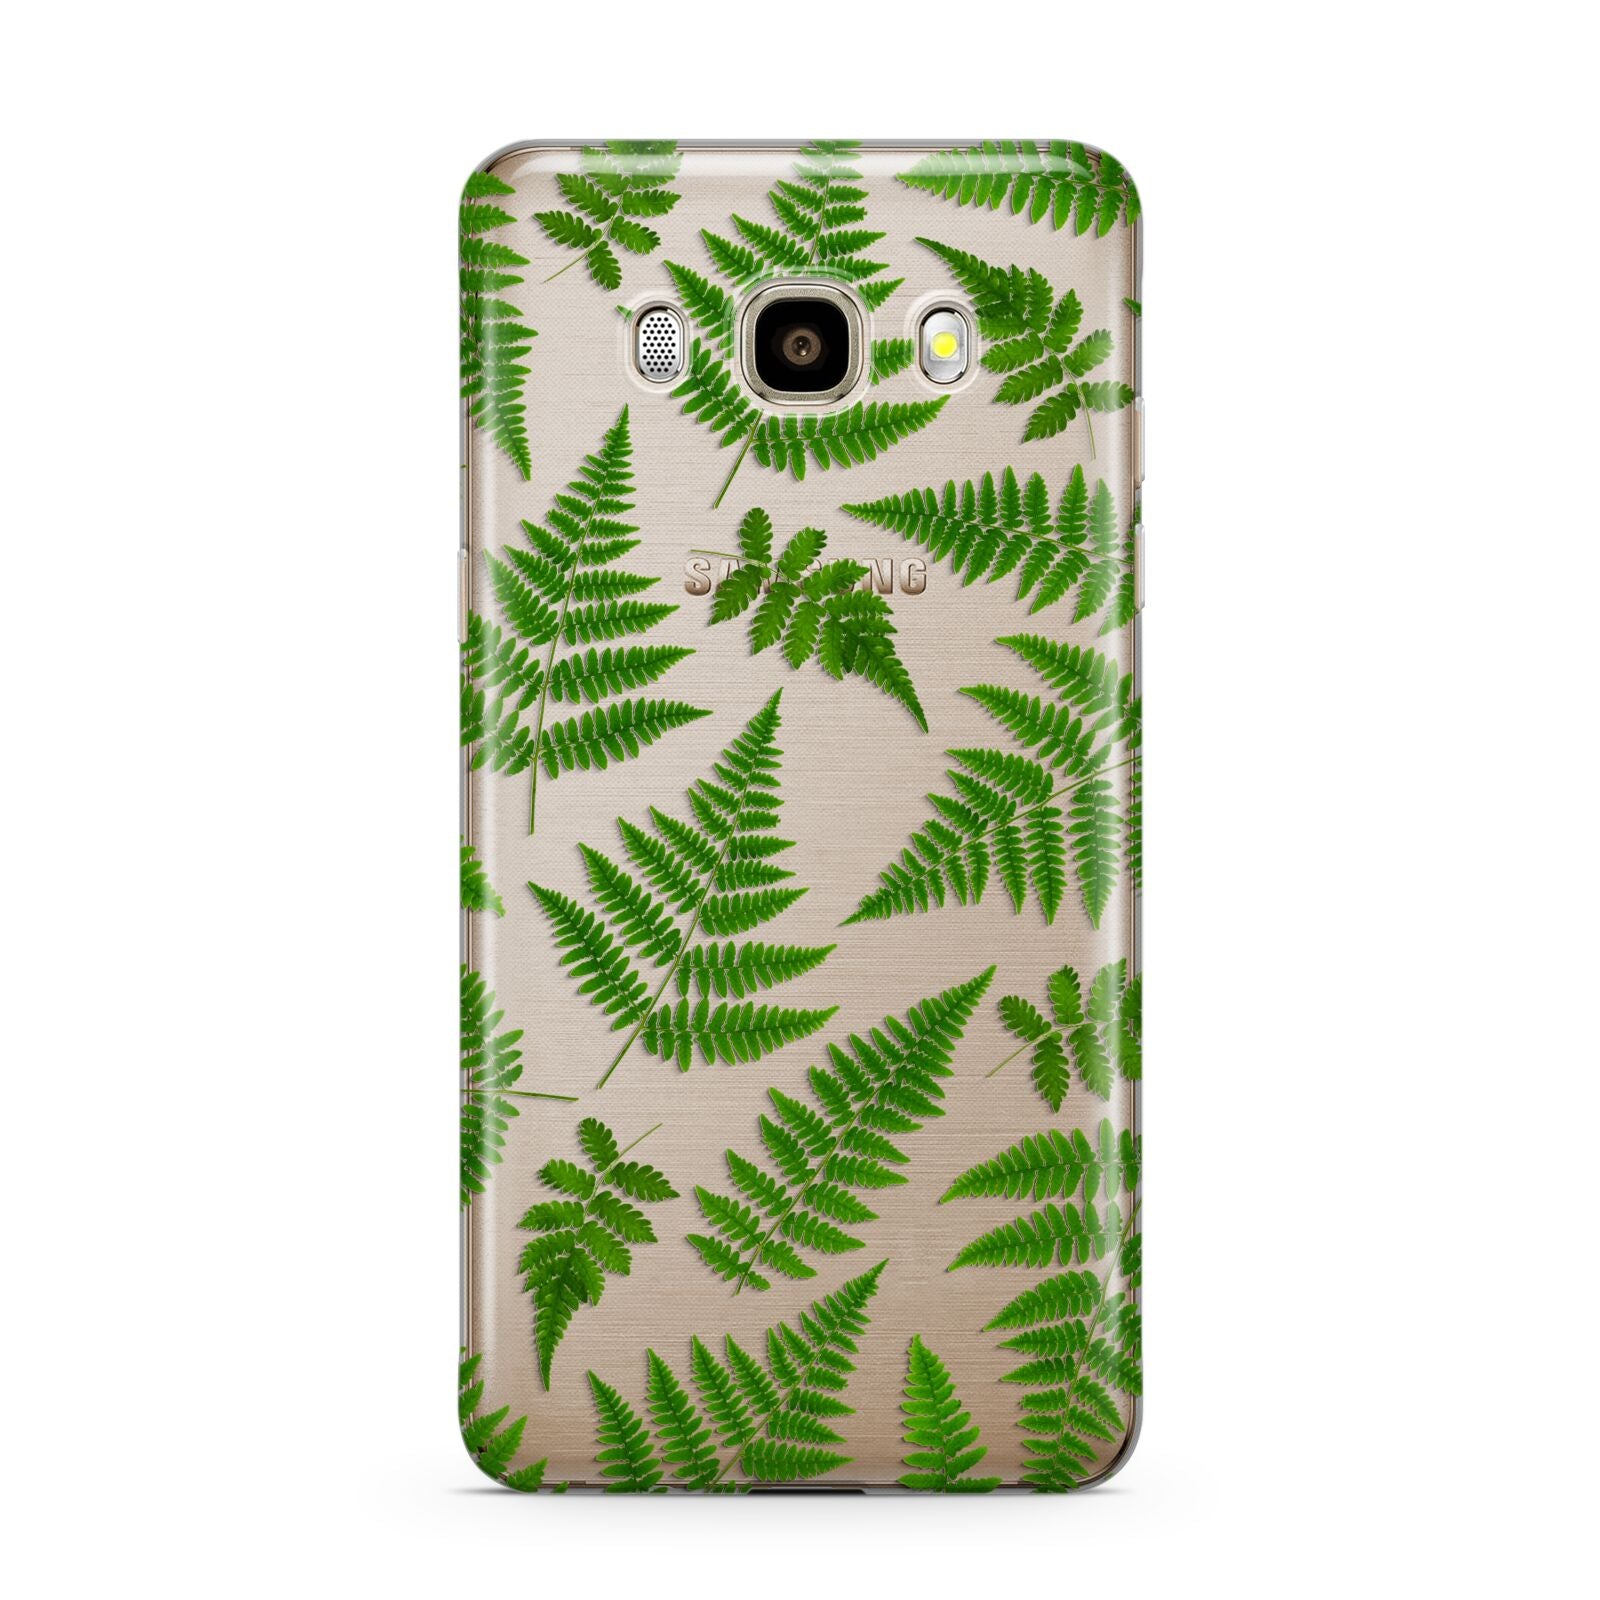 Fern Leaf Samsung Galaxy J7 2016 Case on gold phone